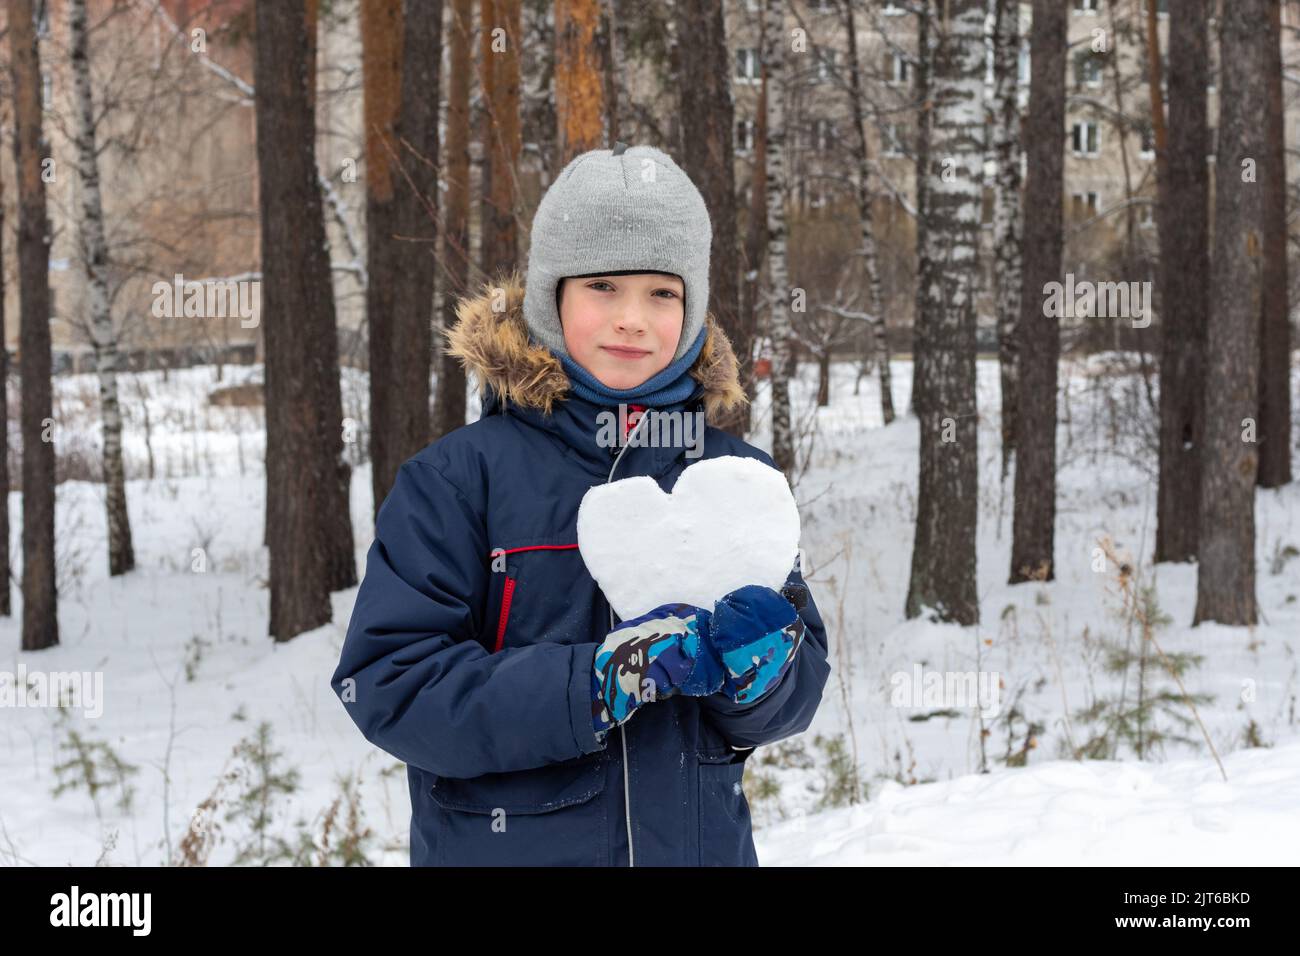 Kinder Winter. Niedlicher lächelnder Junge in einer Winterjacke und Fäustlingen, die nach einem Schneefall eine verschneite Herzform auf der Straße halten. Schnee Herz in den Händen. Stockfoto